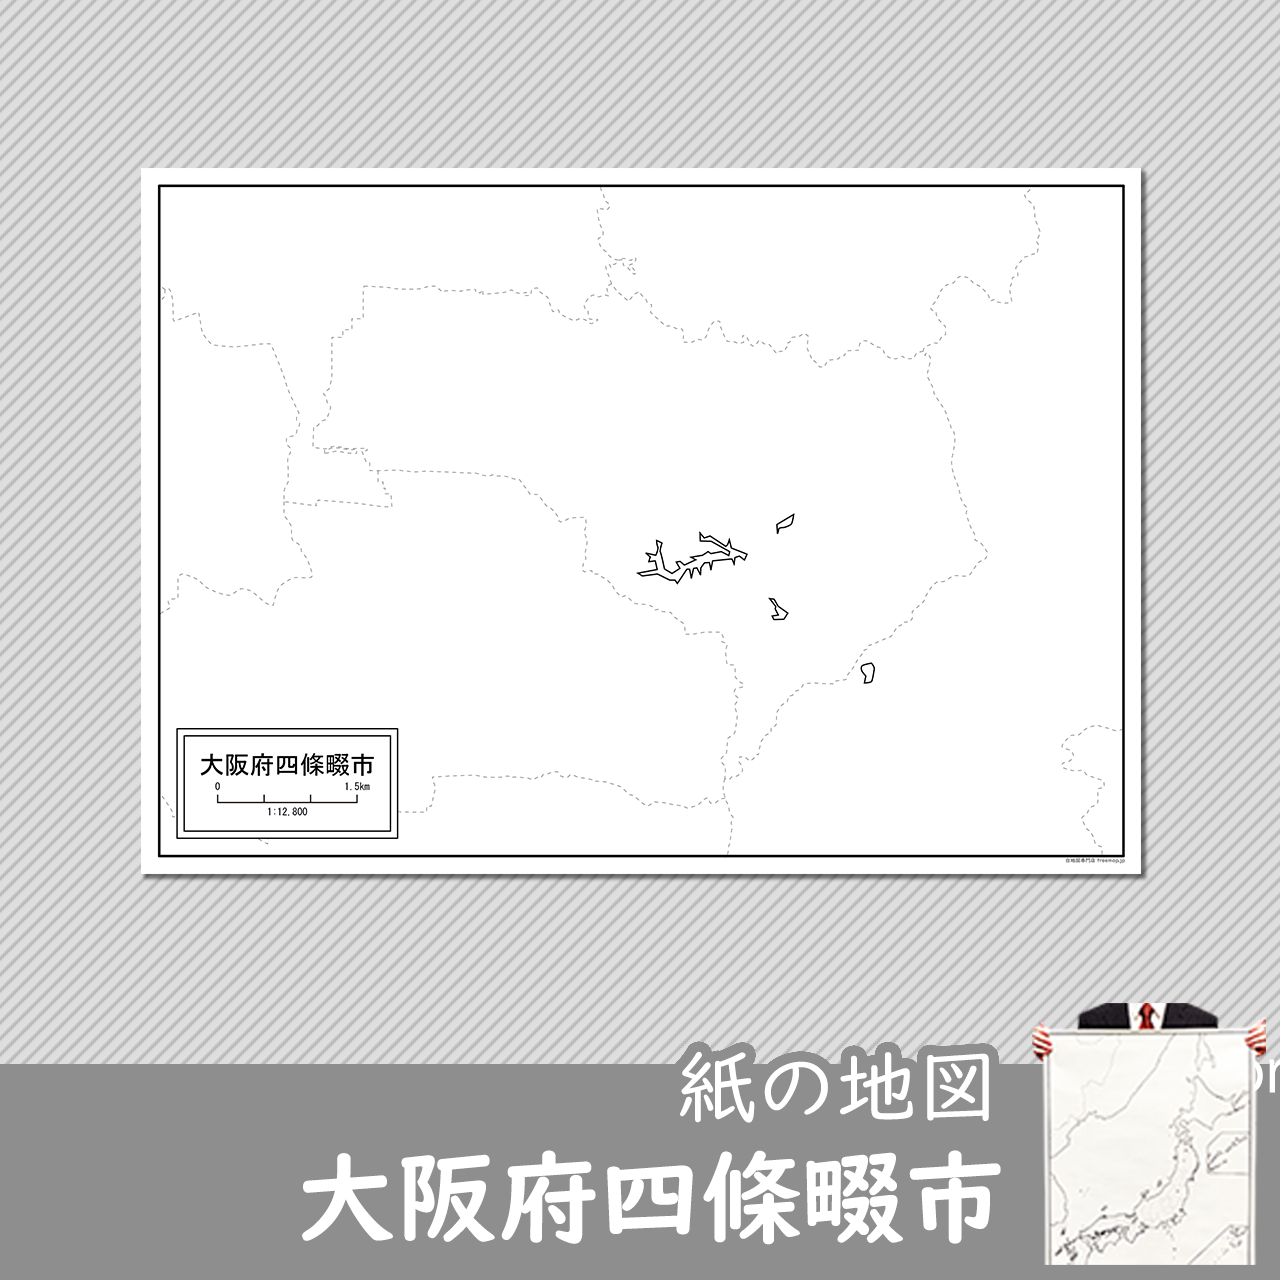 四條畷市の紙の白地図のサムネイル